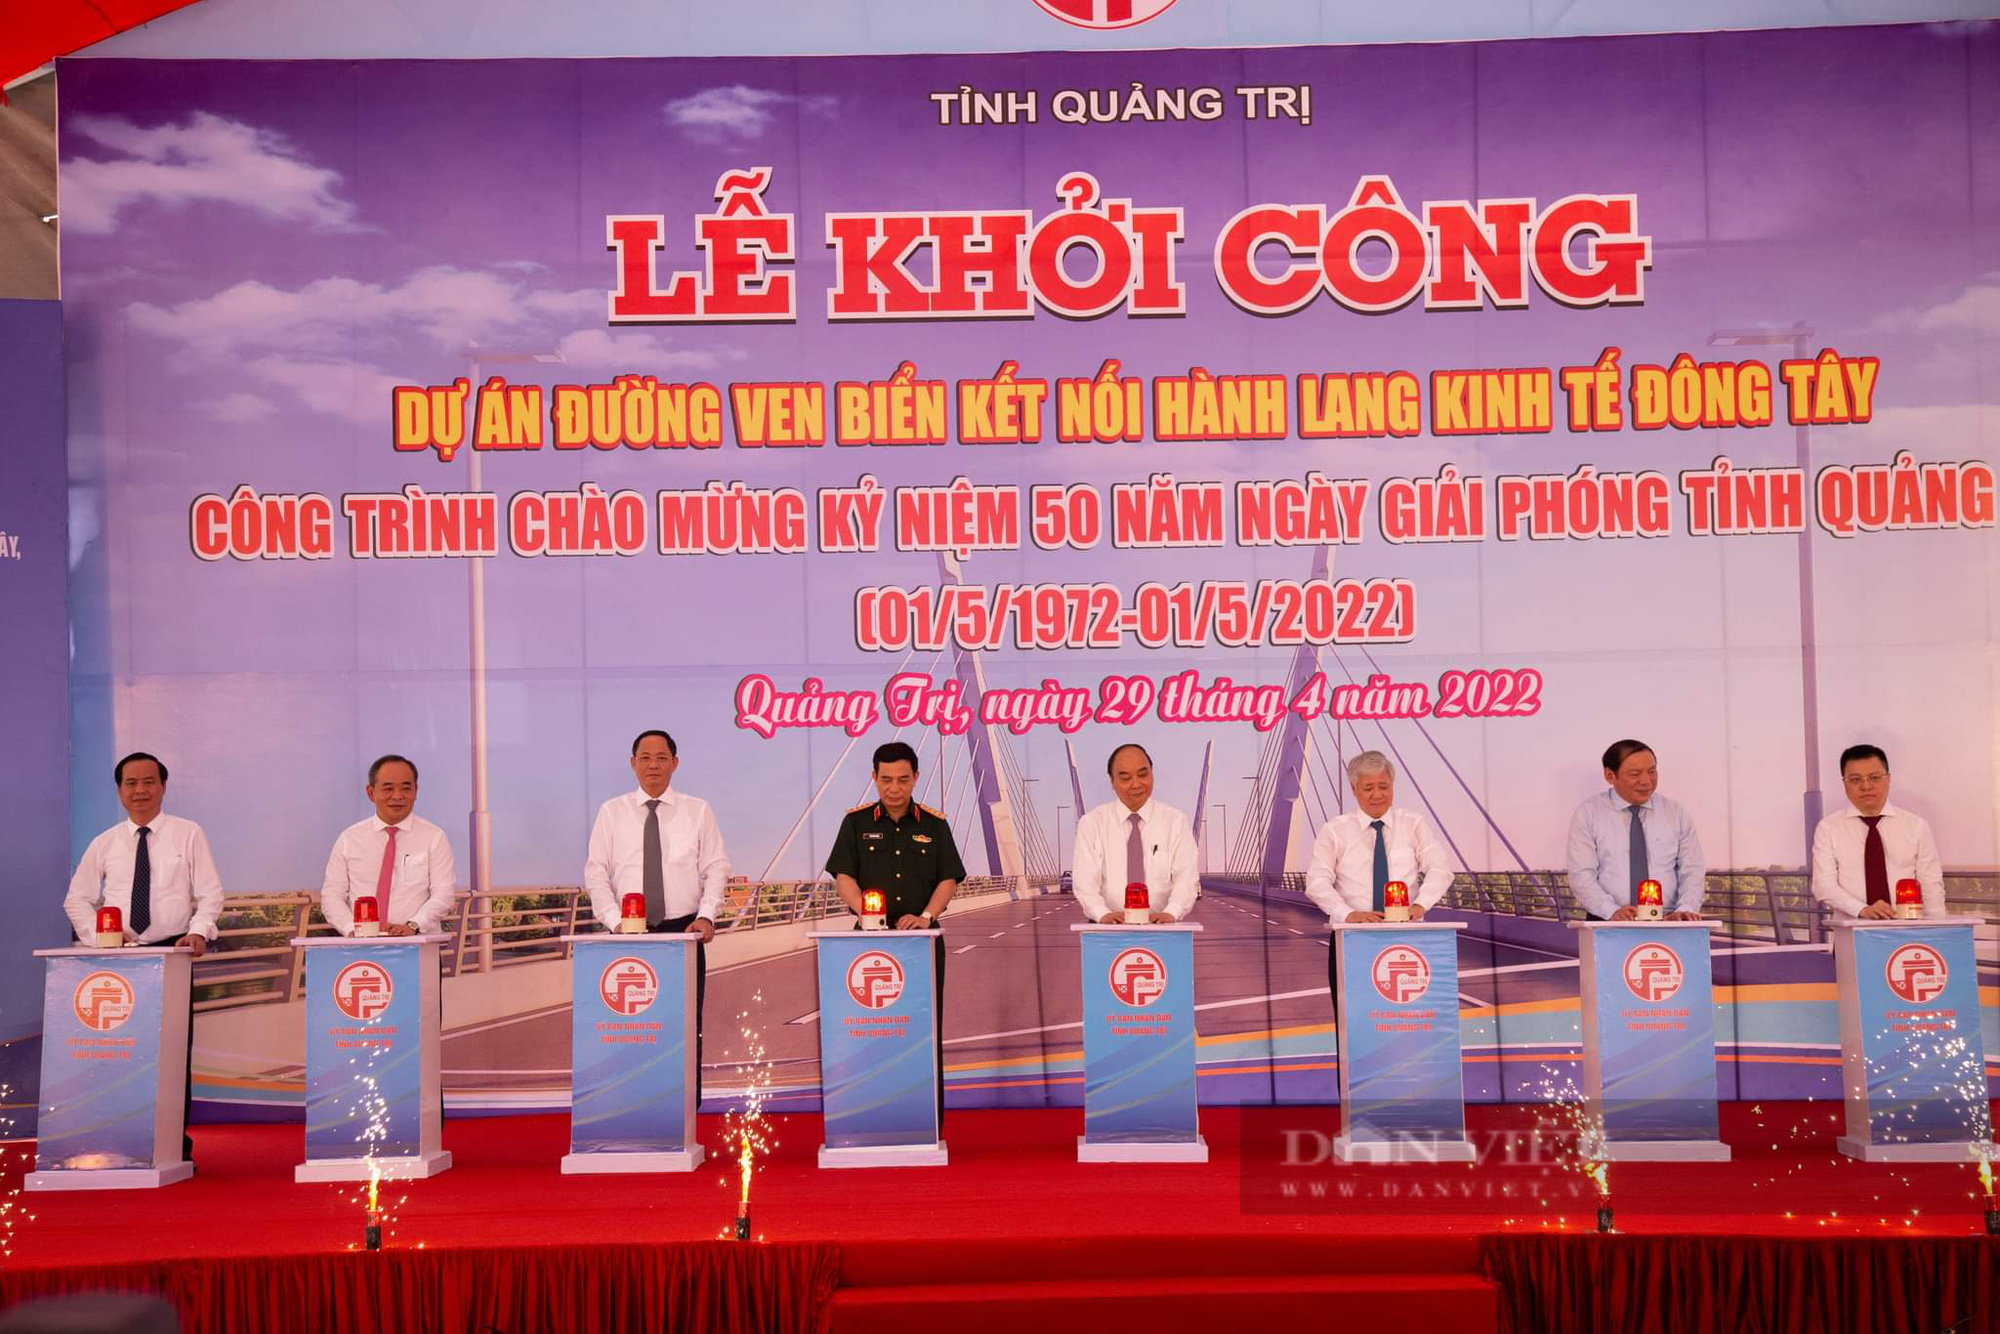 Chủ tịch nước nhấn nút khởi công dự án đường ven biển hơn 2.000 tỷ đồng ở Quảng Trị - Ảnh 1.